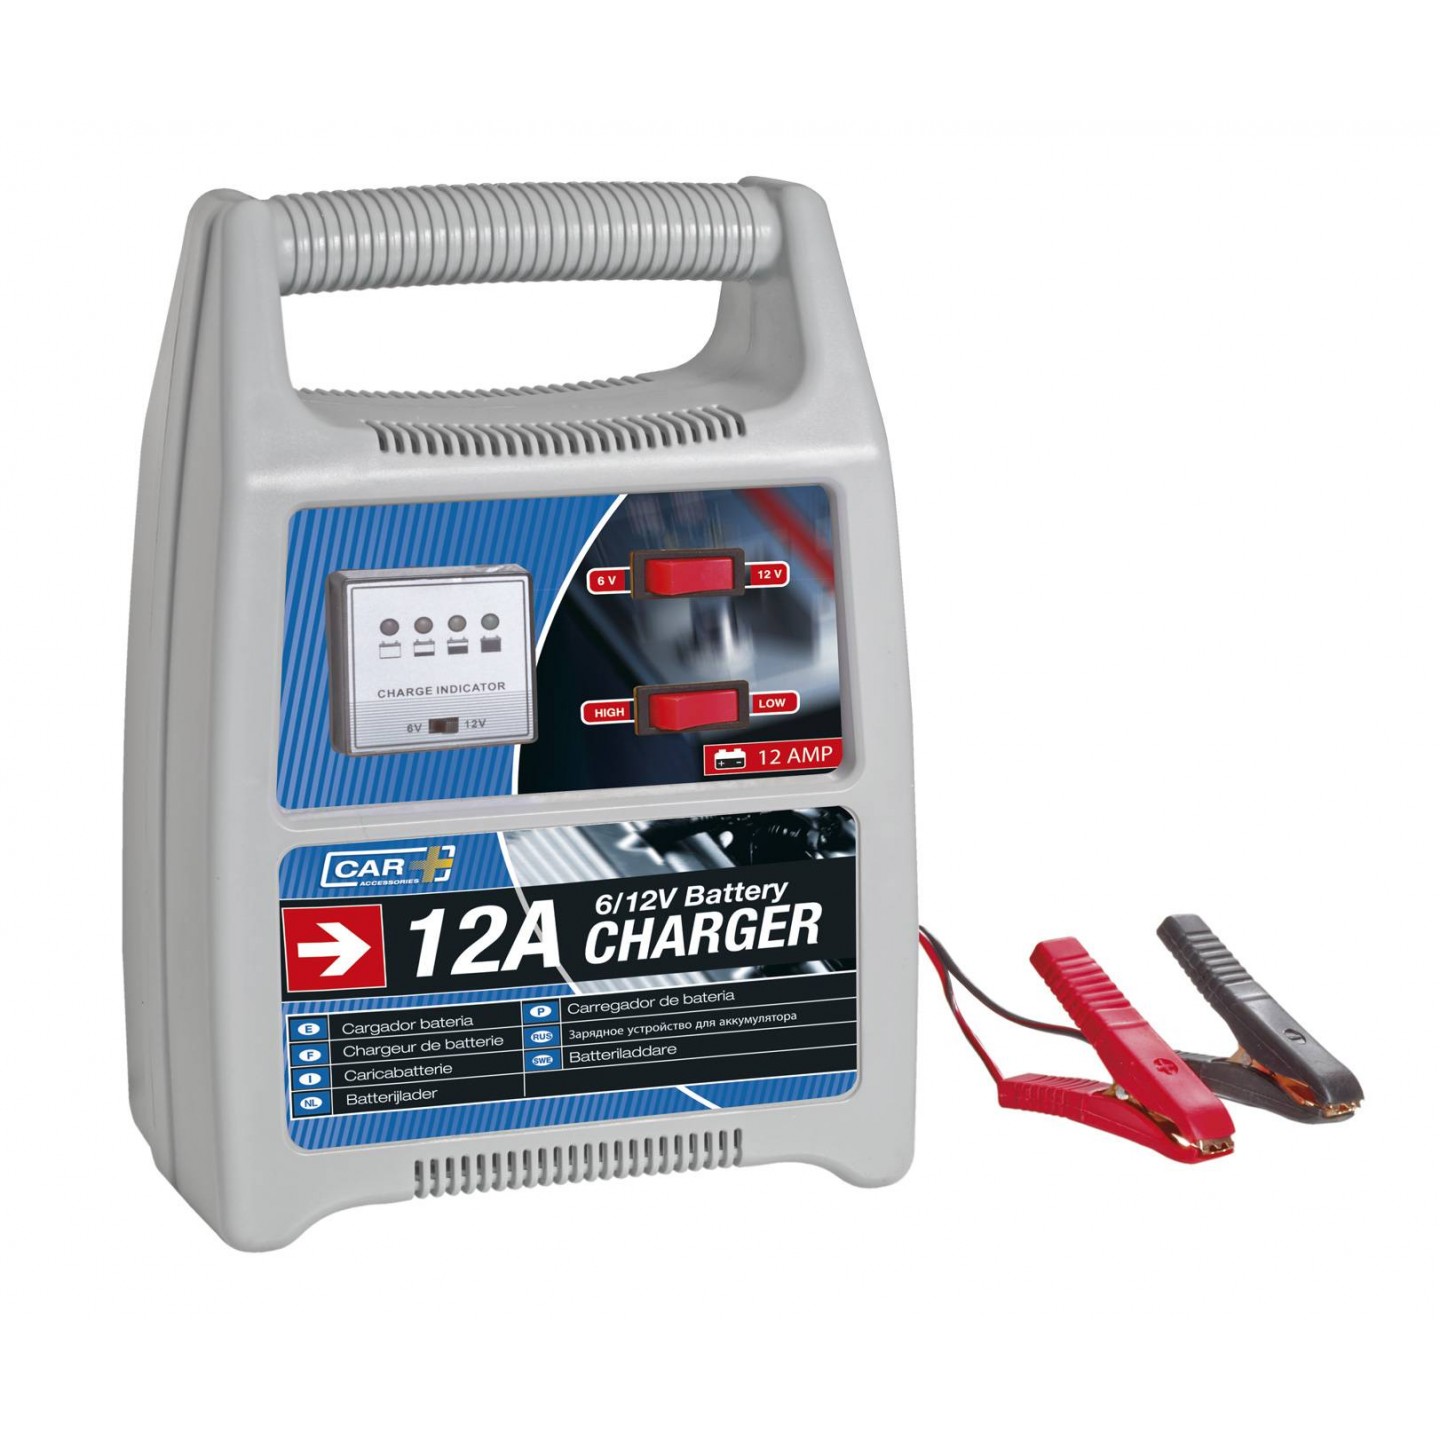 Chargeur de batterie 12A/6-12V Car + 3505127